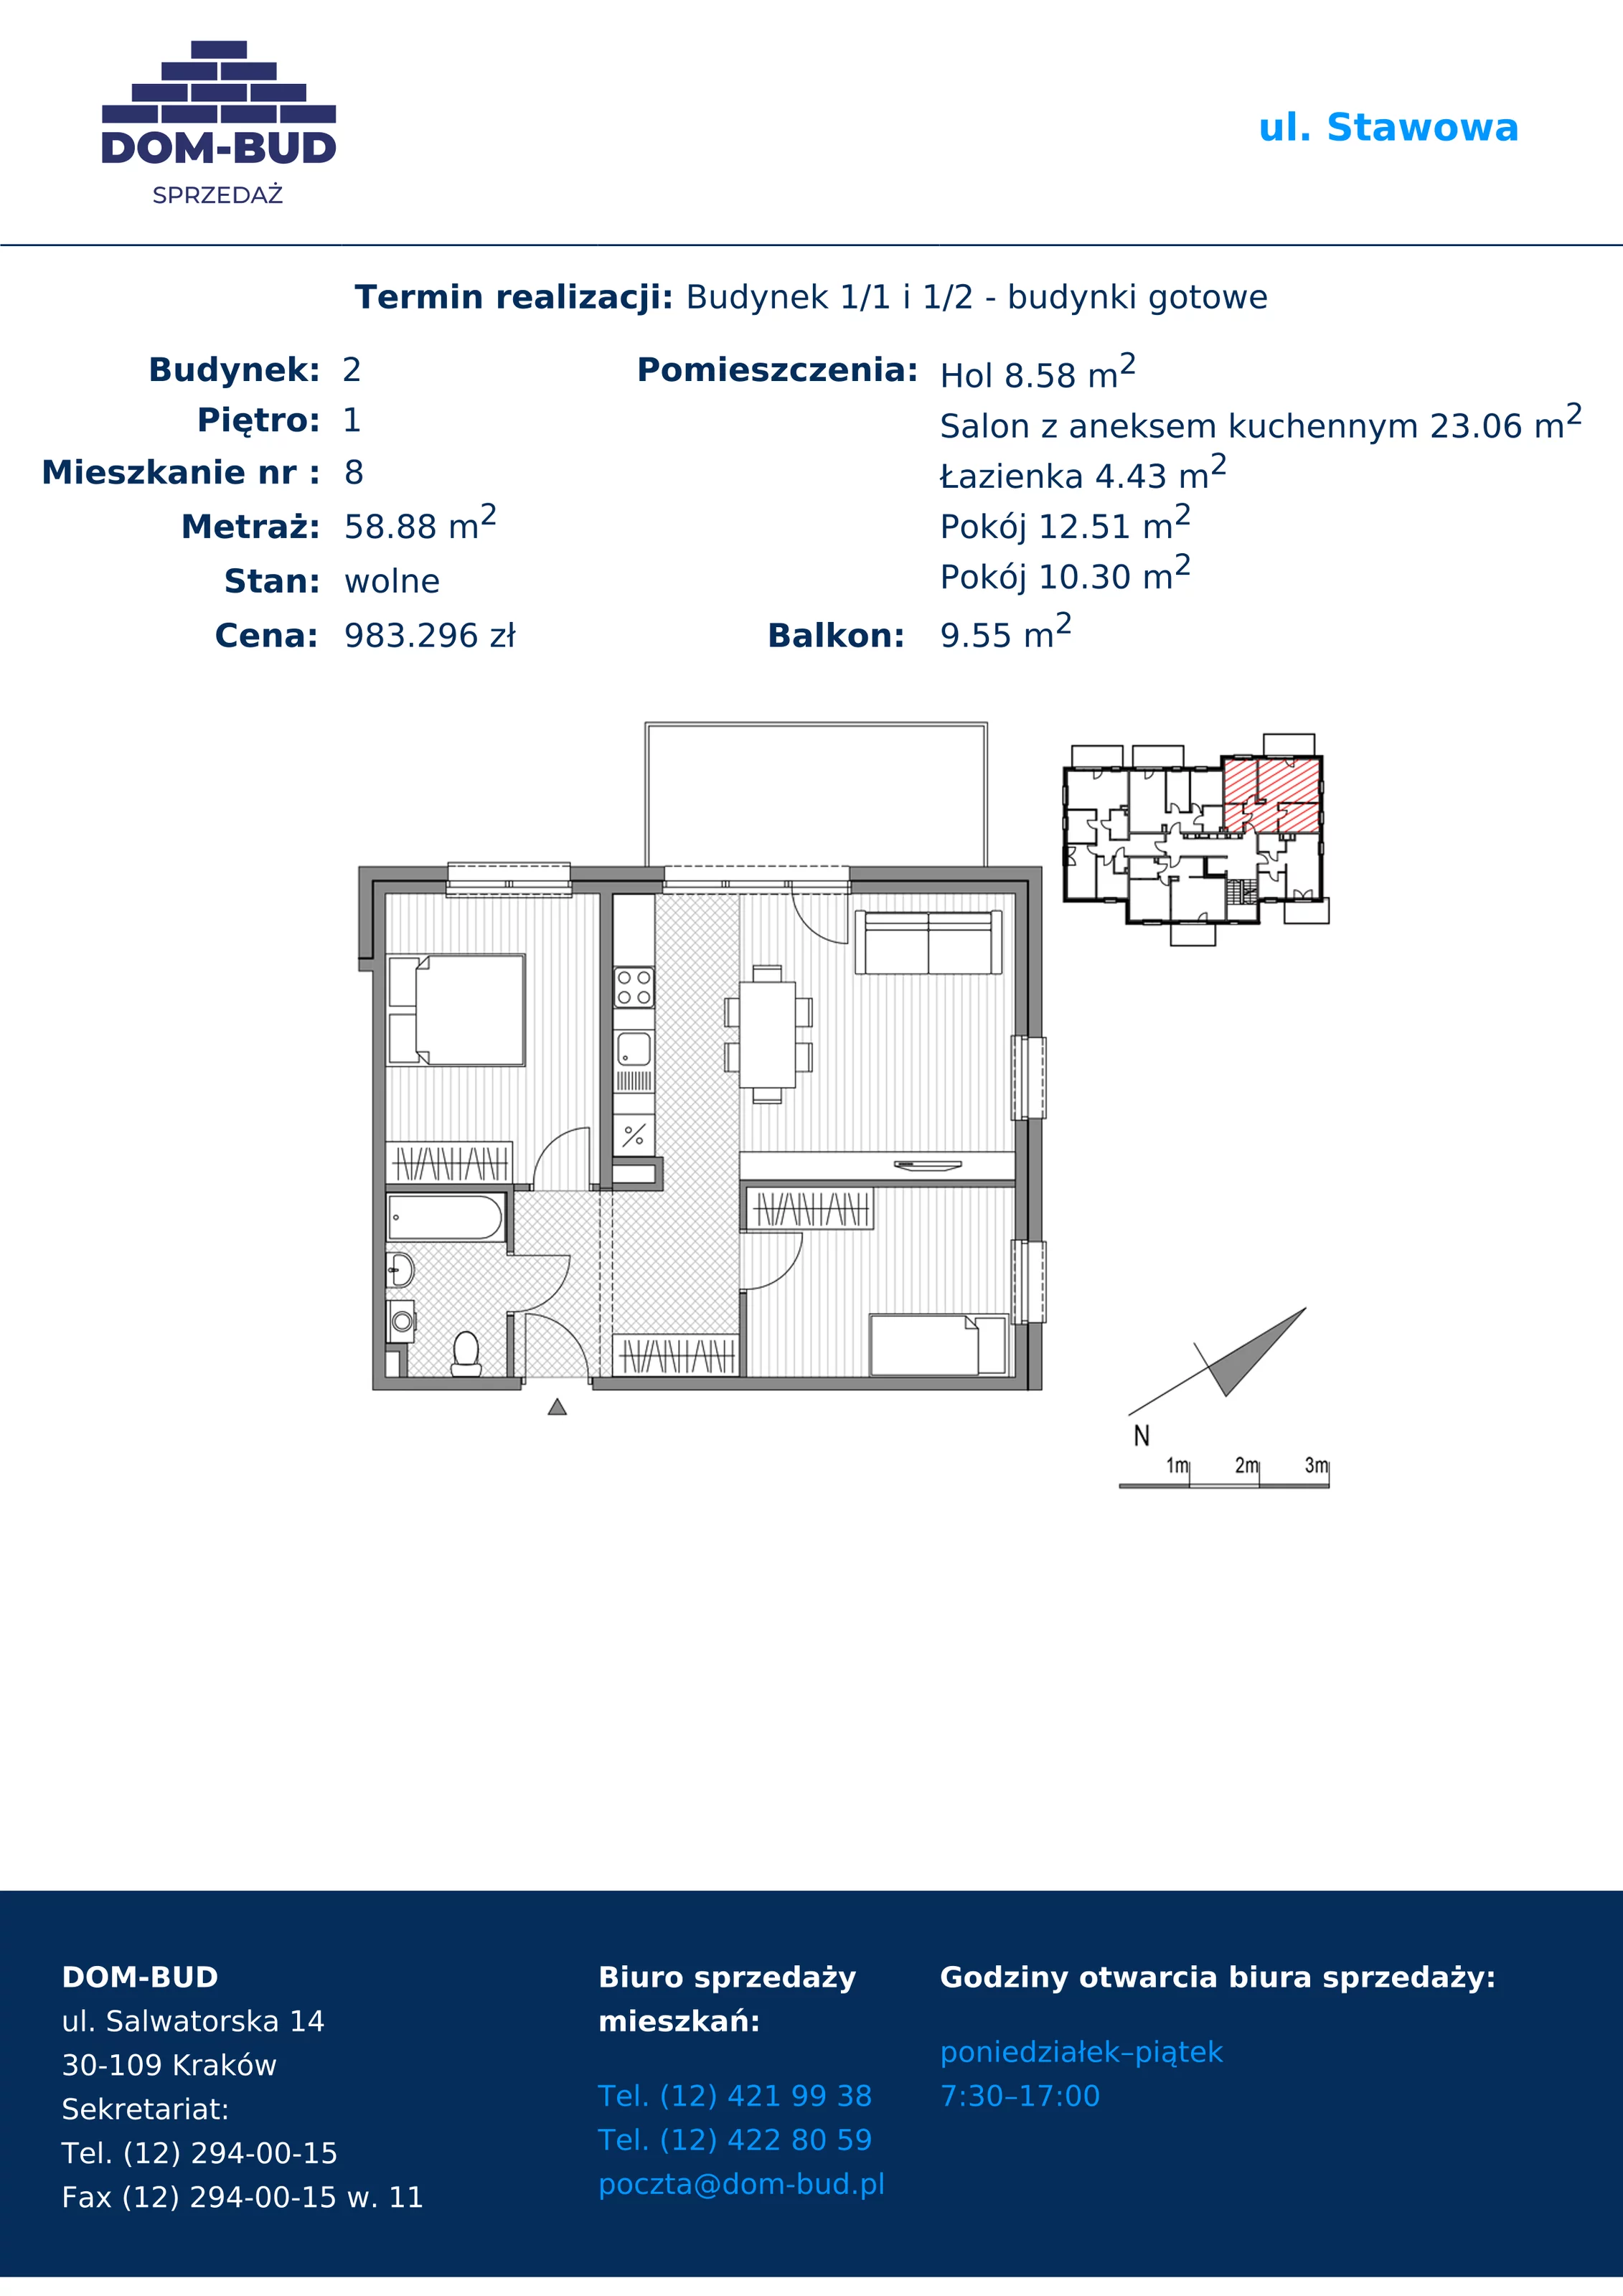 Mieszkanie 58,88 m², piętro 1, oferta nr 1/2-8, ul. Stawowa, Kraków, Prądnik Biały, Bronowice Wielkie, ul. Stawowa 242